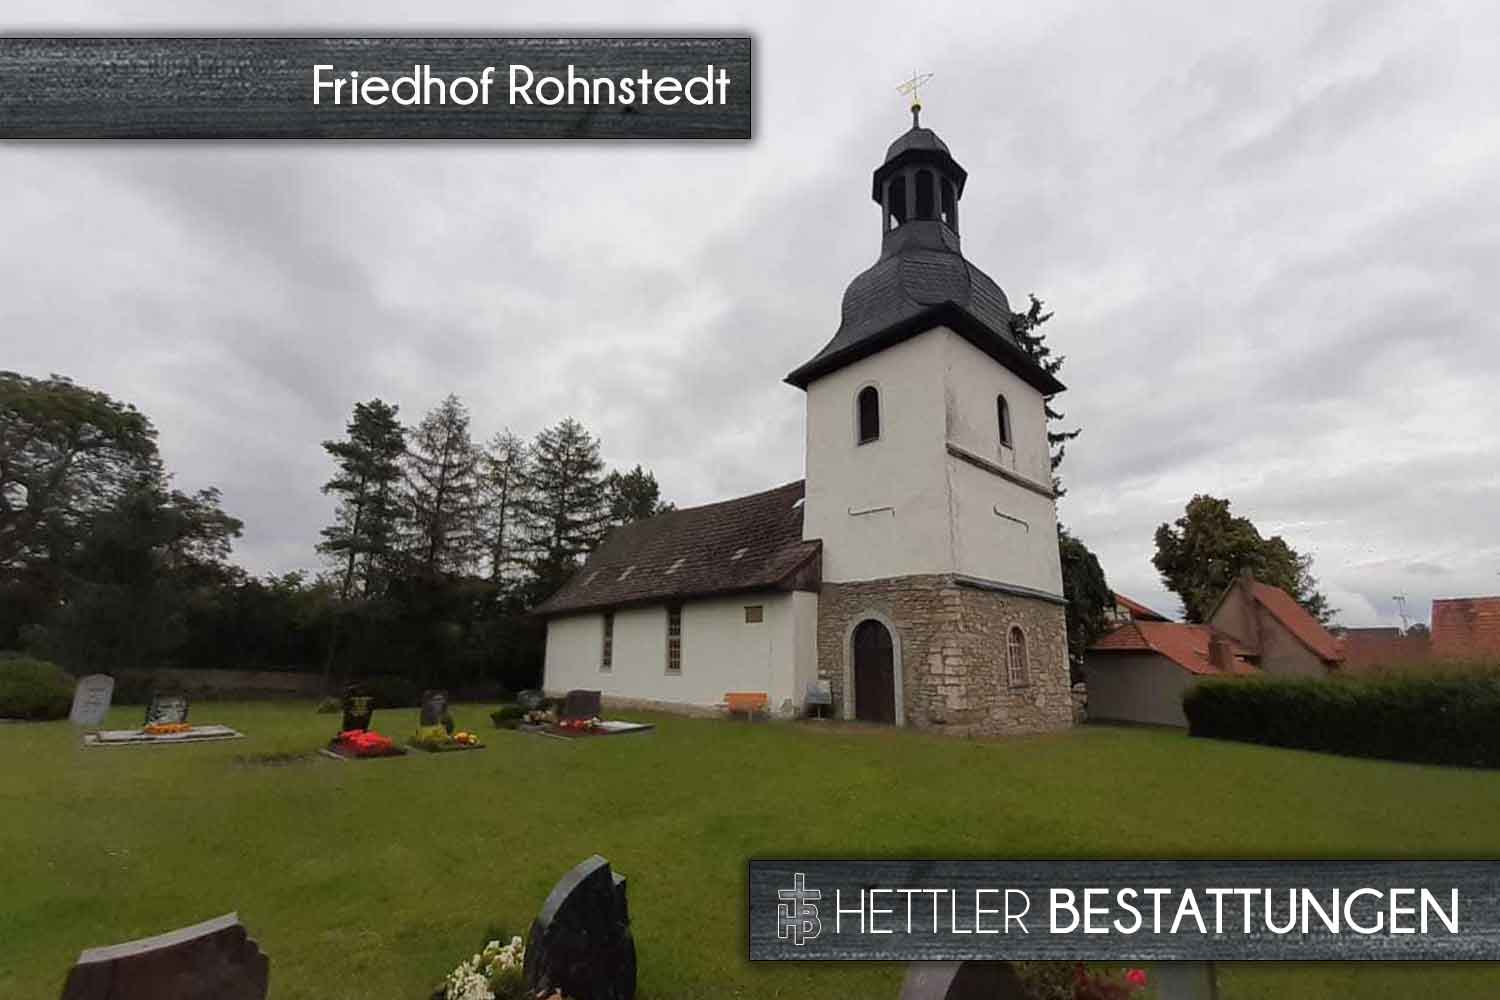 Friedhof in Rohnstedt. Ihr Ort des Abschieds mit Hettler Bestattungen.